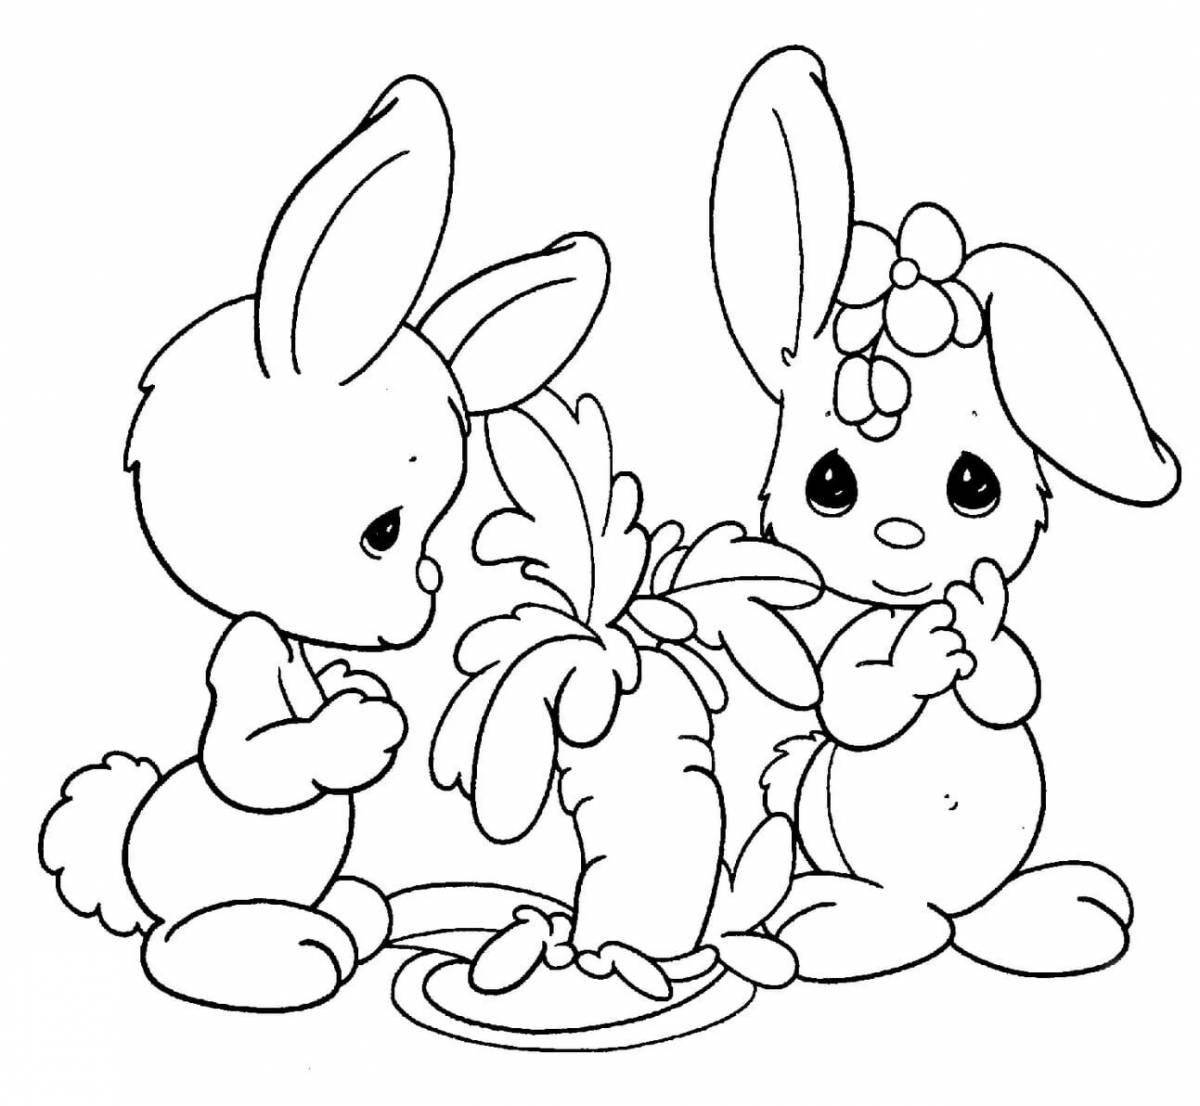 Happy coloring page print bunny